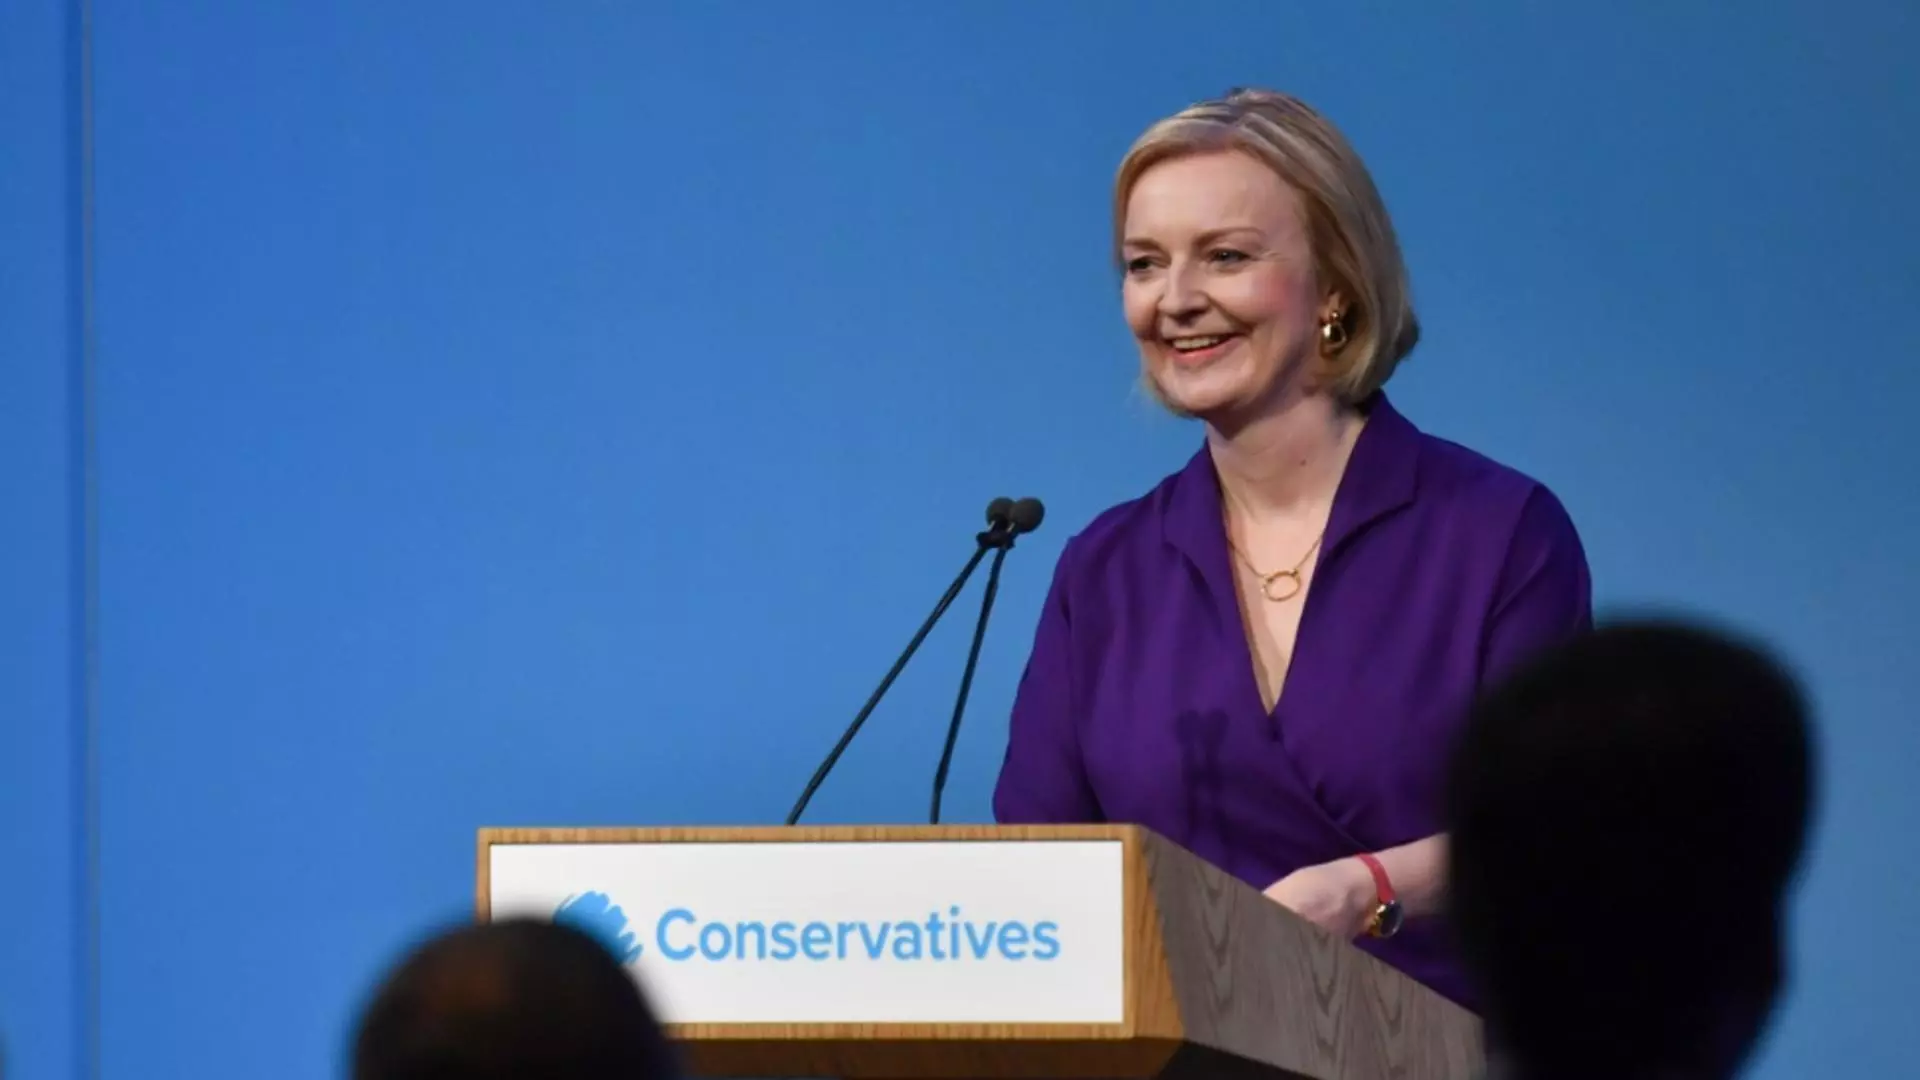 Schimbare la vârful politicii, în Marea Britanie - Liz Truss, noul premier și președinte al conservatorilor, în locul lui Boris Johnson